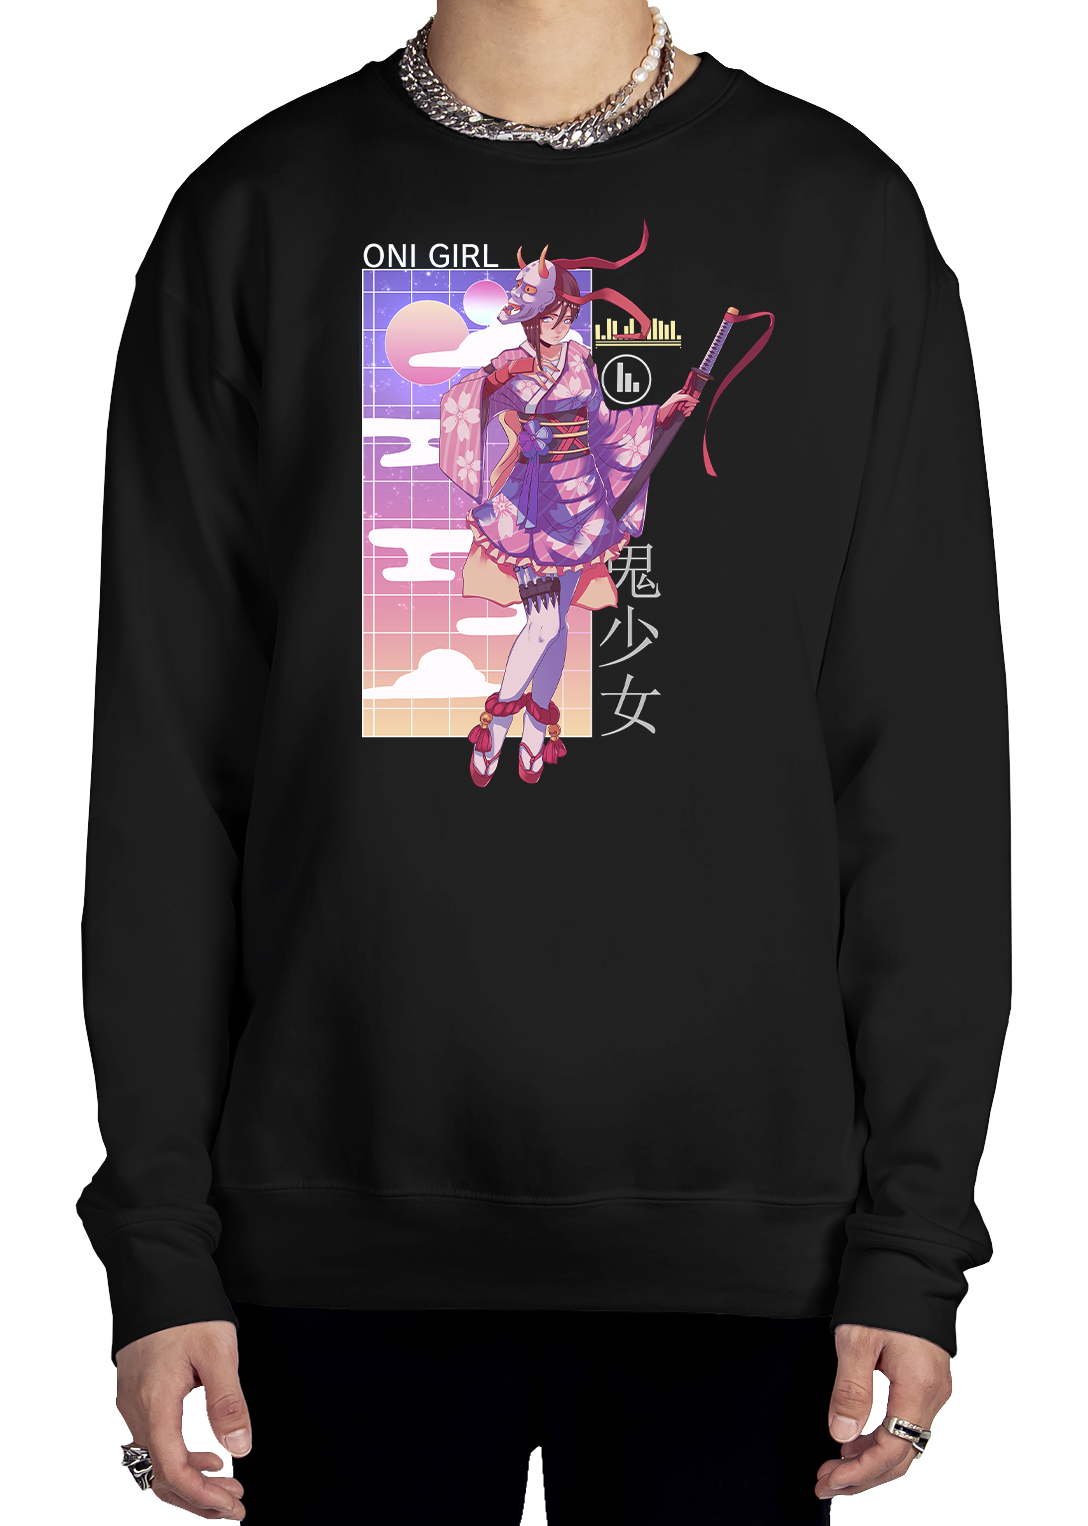 Oni Girl Sweatshirt